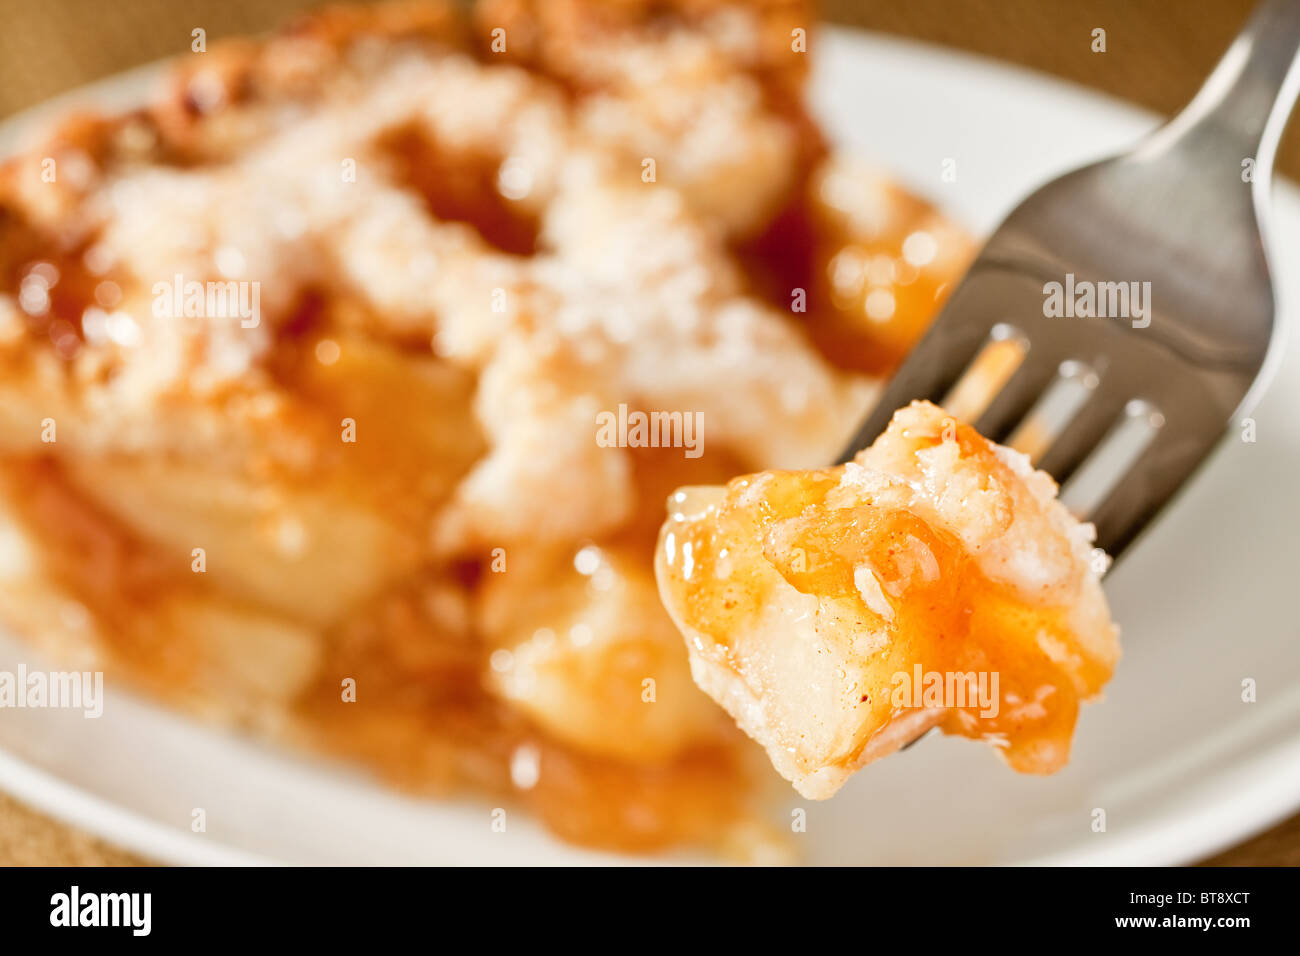 Morso del rustico deliziosa torta di mele sulla forcella Foto Stock